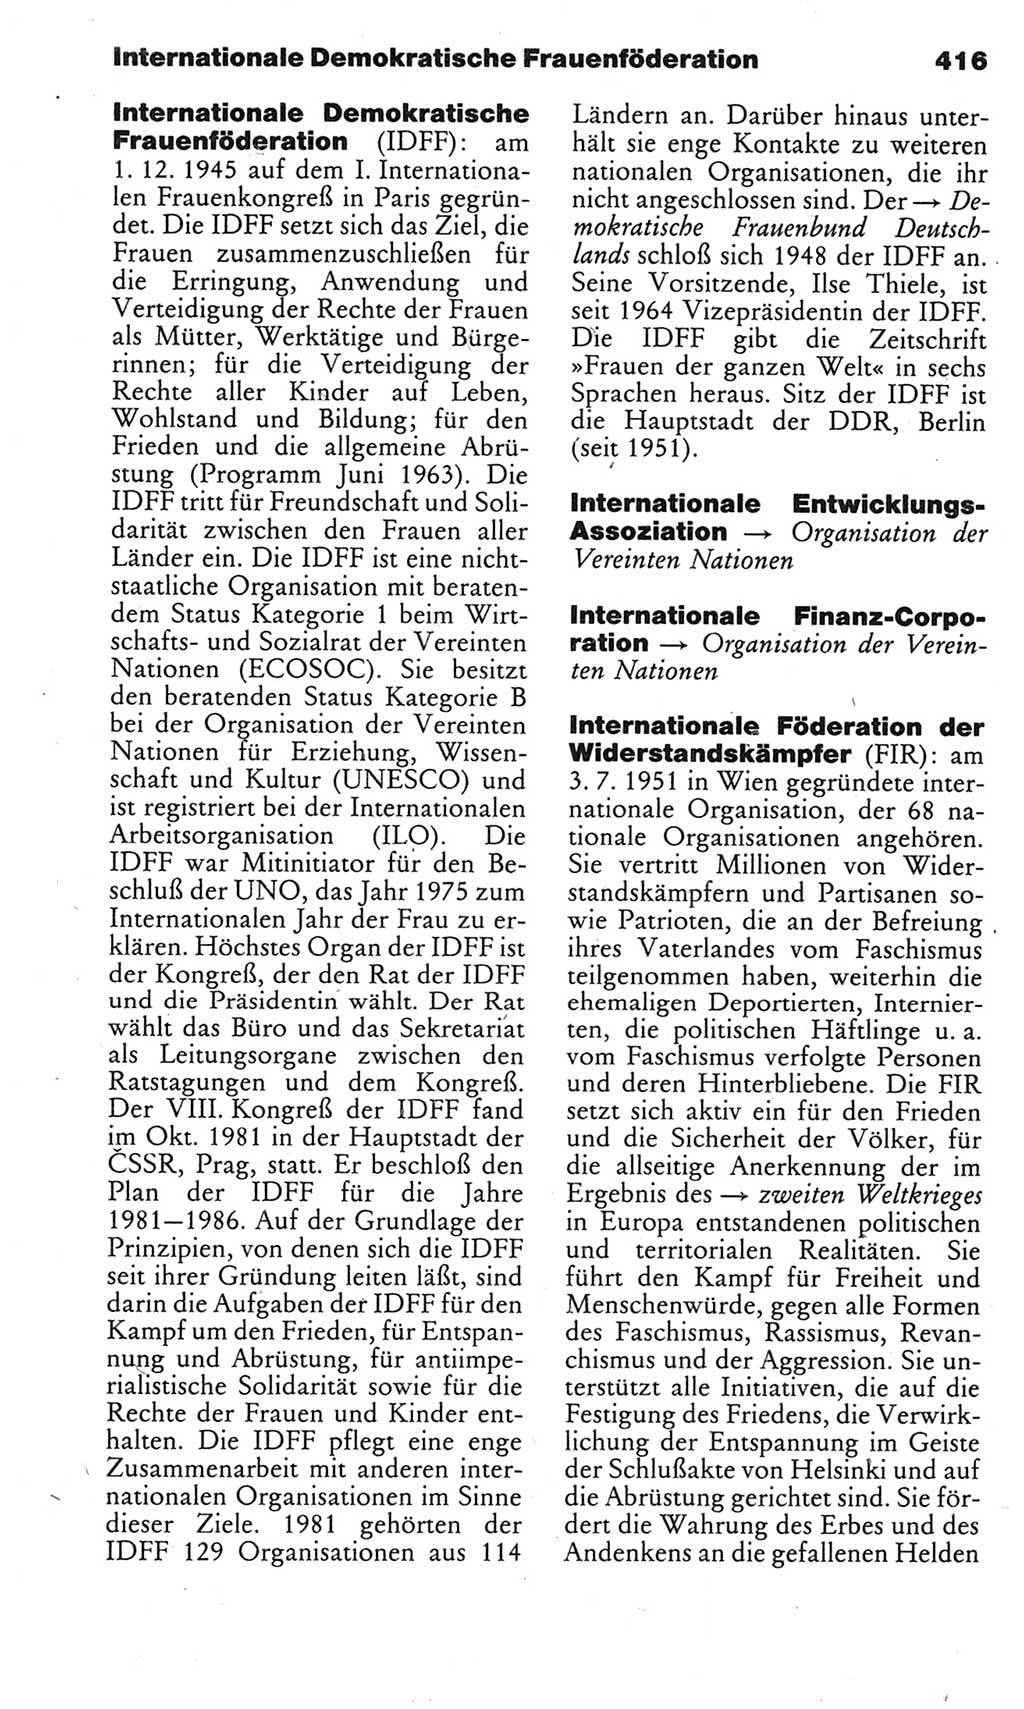 Kleines politisches Wörterbuch [Deutsche Demokratische Republik (DDR)] 1983, Seite 416 (Kl. pol. Wb. DDR 1983, S. 416)